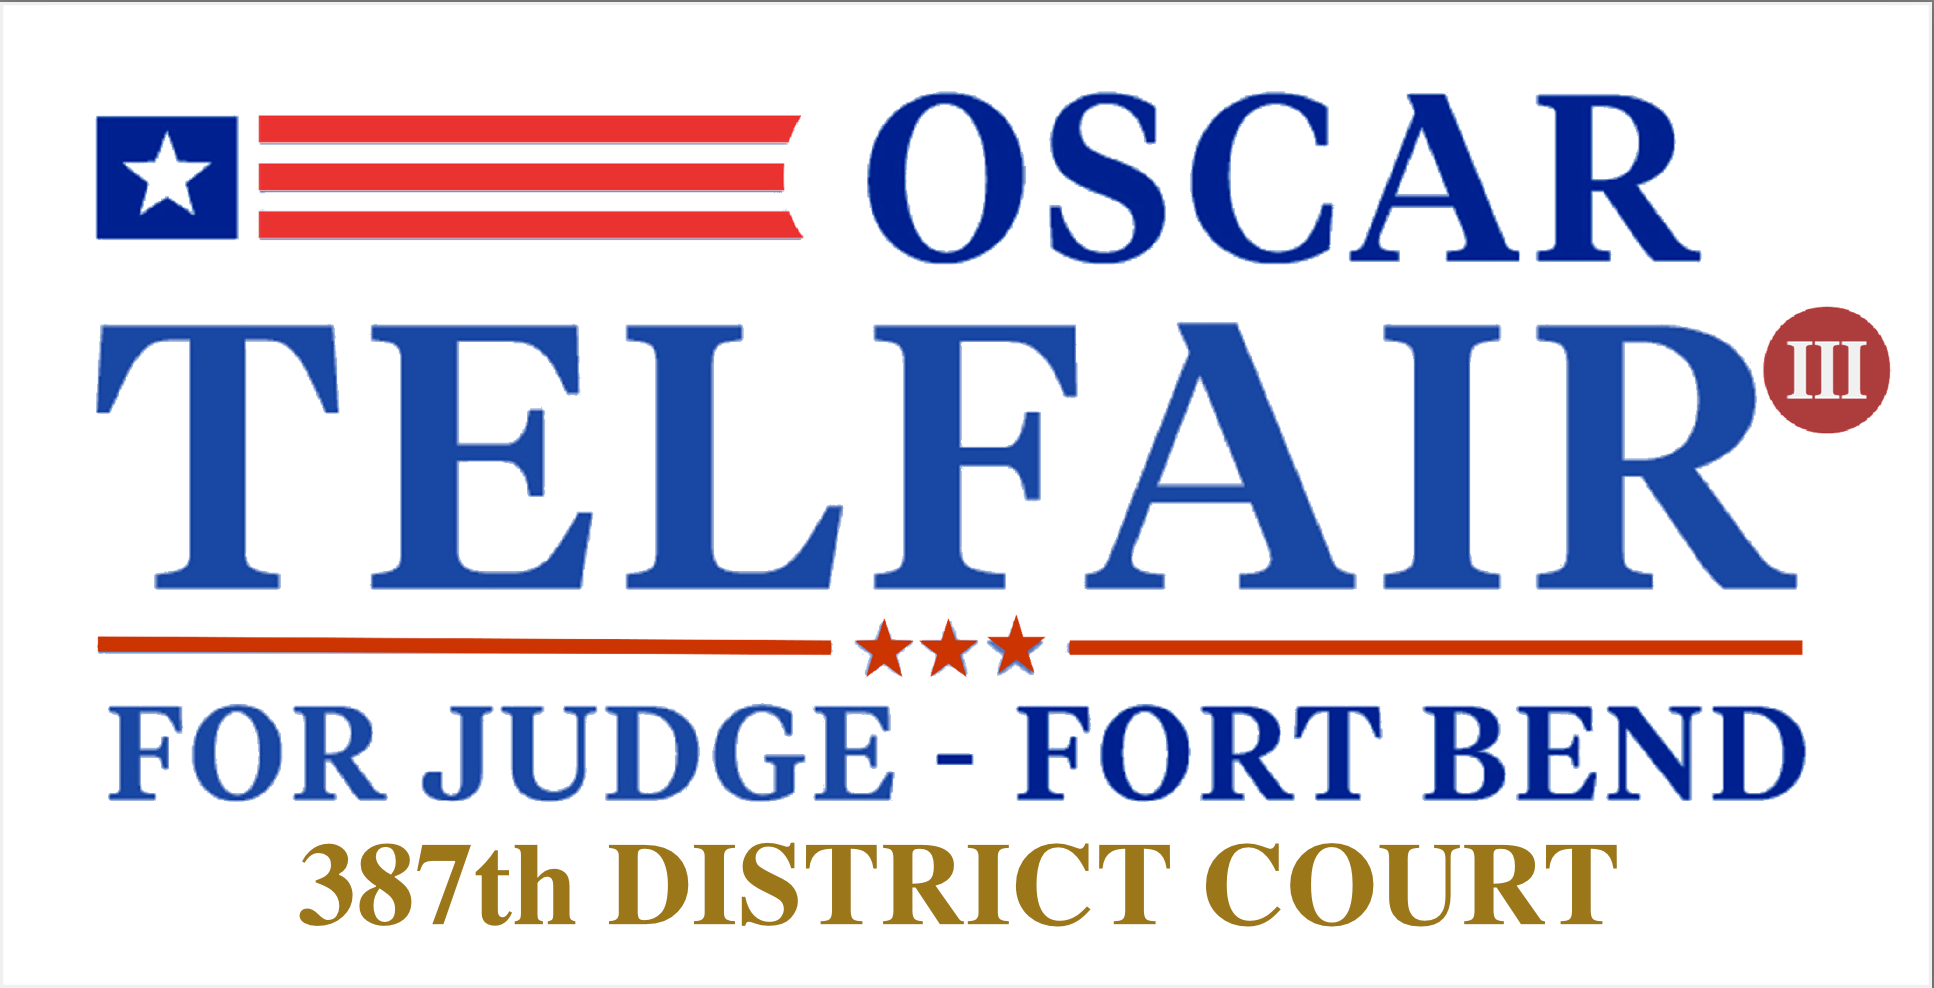 Oscar Telfair 4 Judge Campaign logo